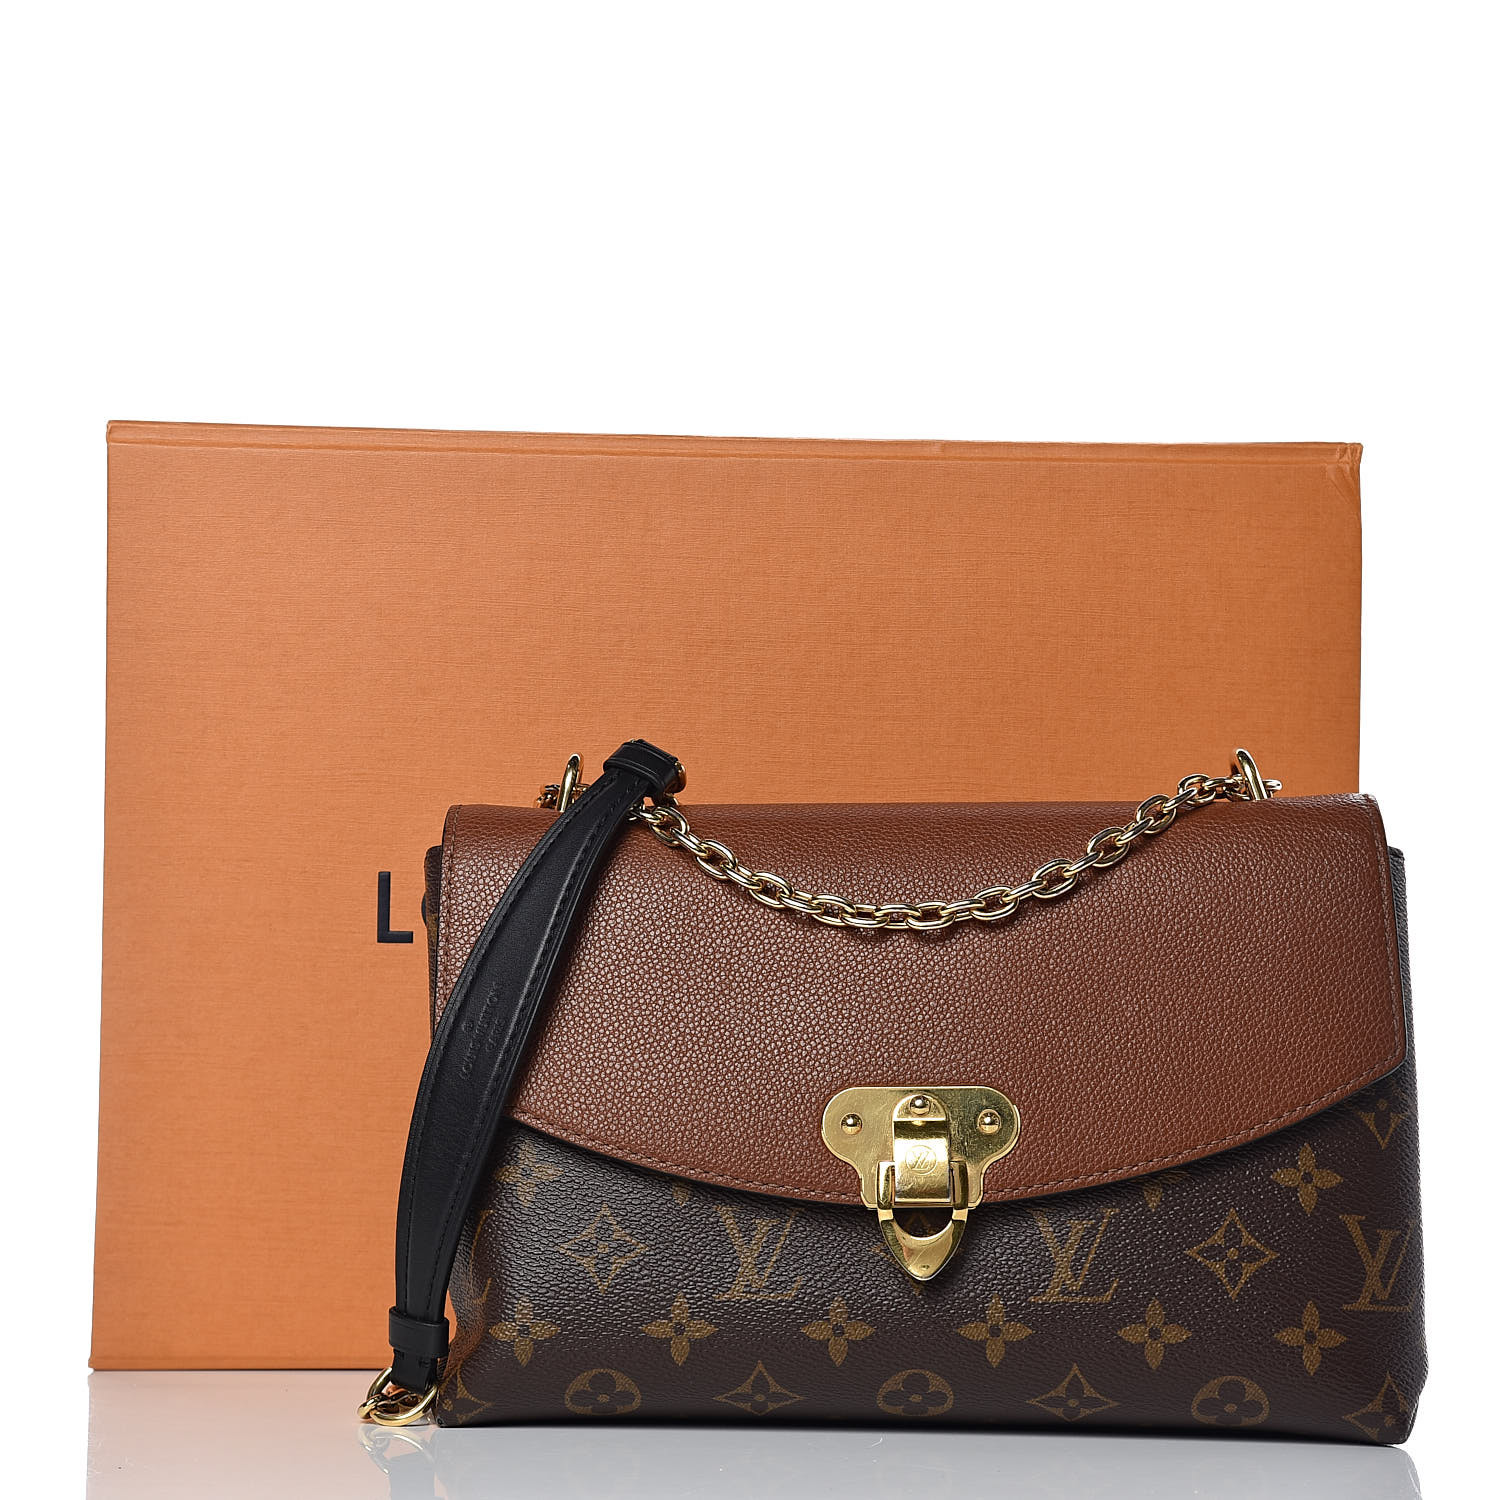 Louis Vuitton Saint Placide bag review! 